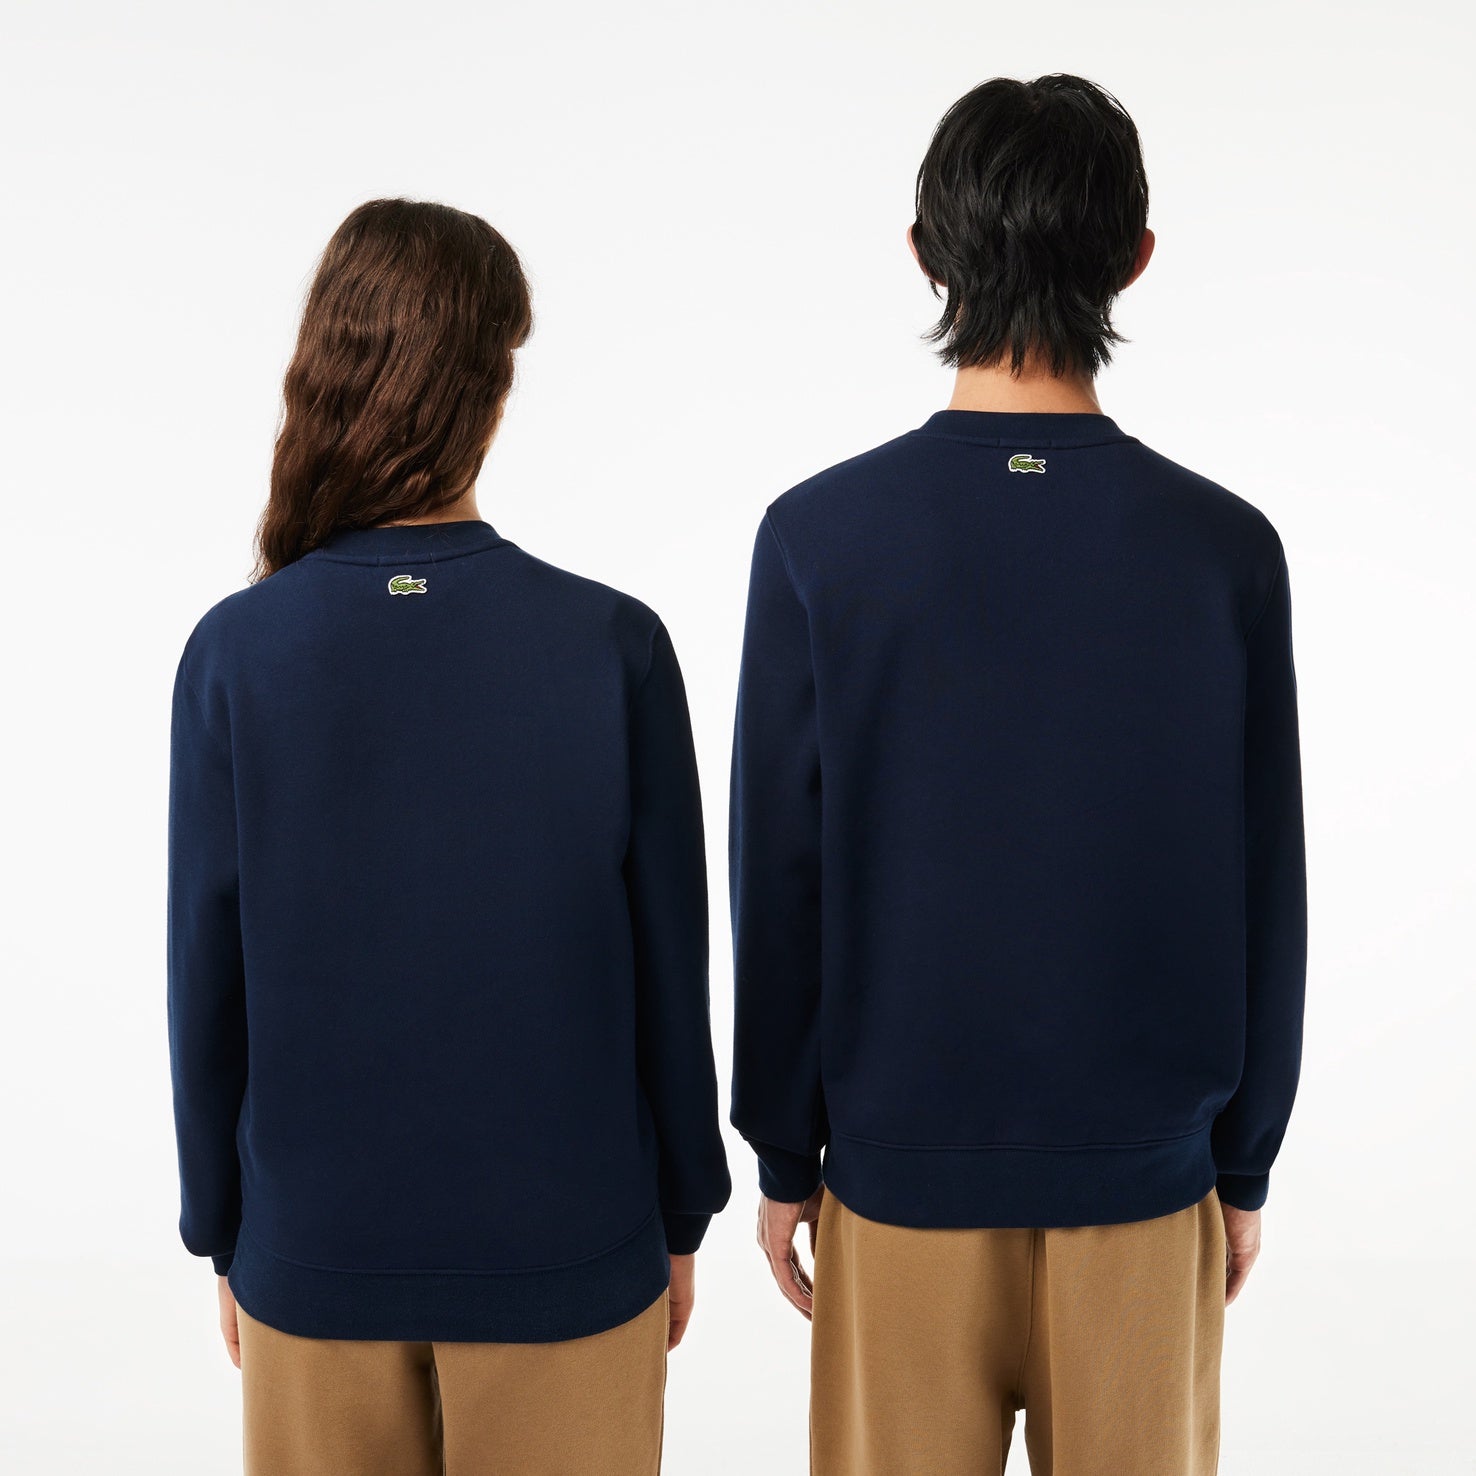 Sweatshirt Cotton Blue Navy Branded SH1228 166 Lacoste Fleece